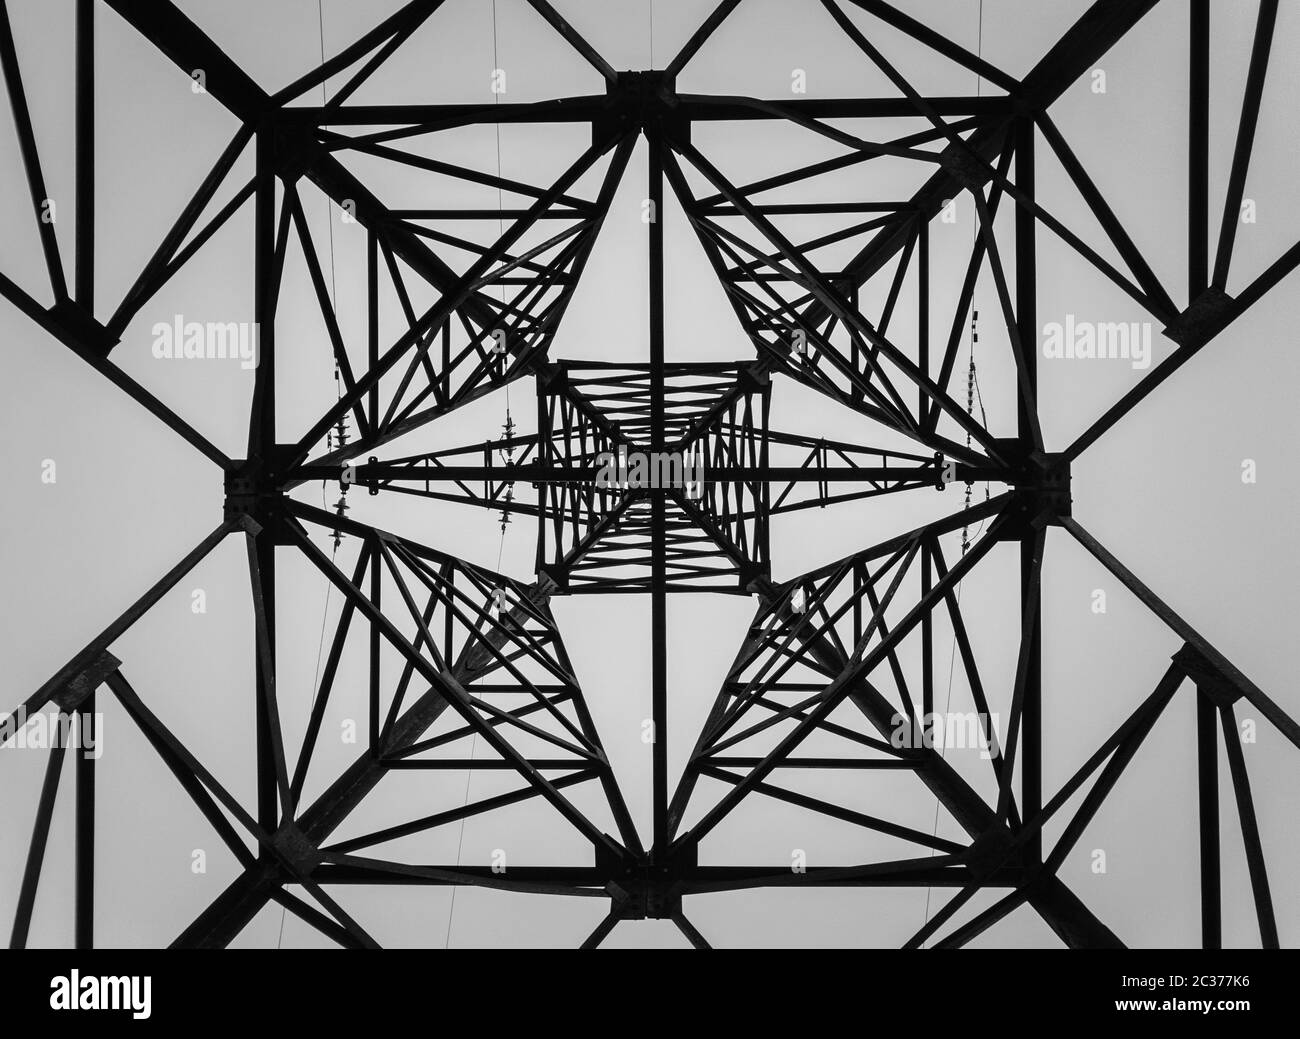 En dessous d'un truss construction en piliers. Diverses formes géométriques, des motifs d'une structure en acier. La texture métallique d'un poteau d'électricité. Banque D'Images